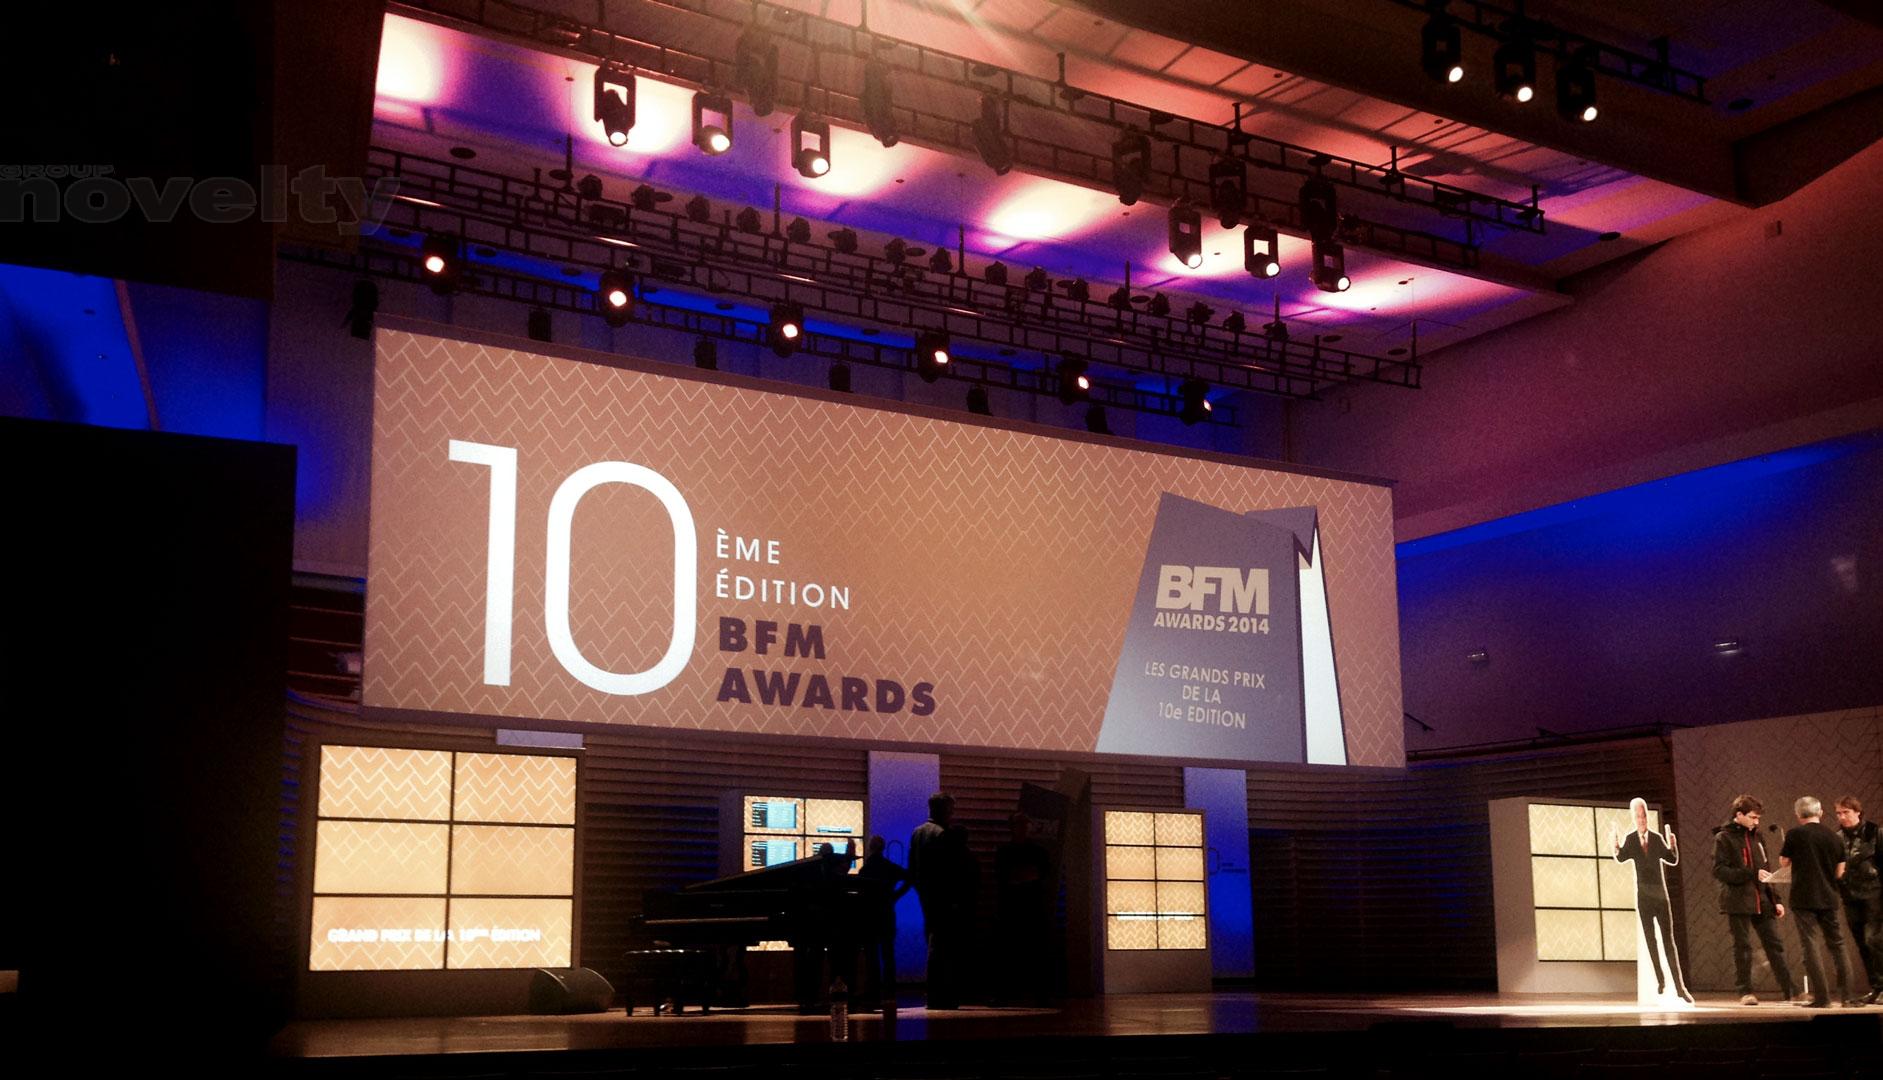 Visuel BFM Awards 2014